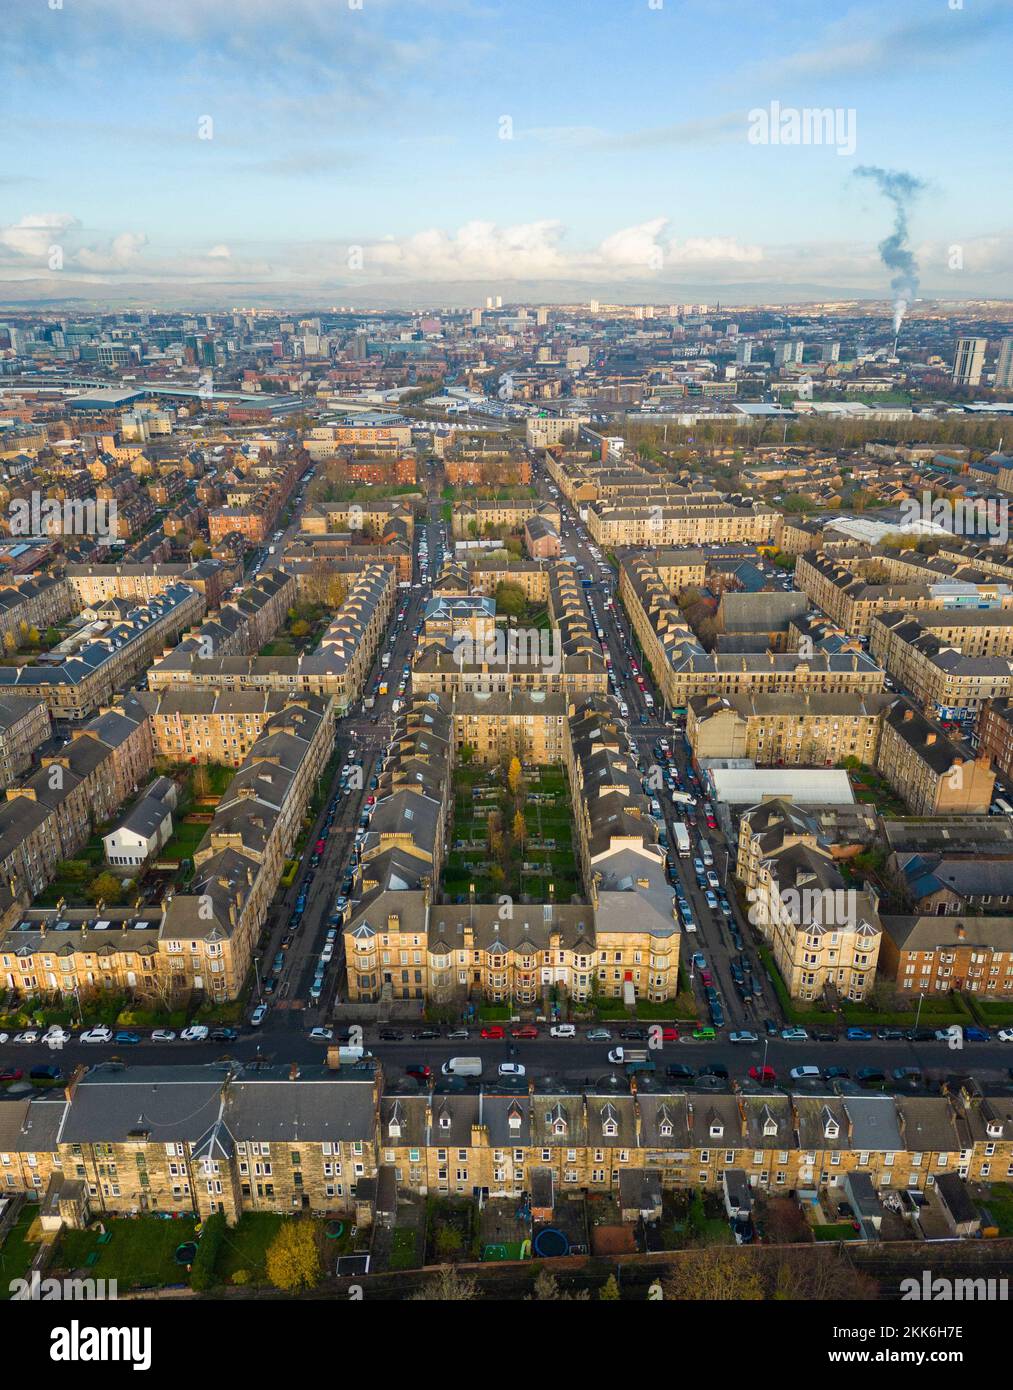 Vista aérea desde el drone del barrio de Govanhill en el lado sur de Glasgow, Escocia, Reino Unido Foto de stock